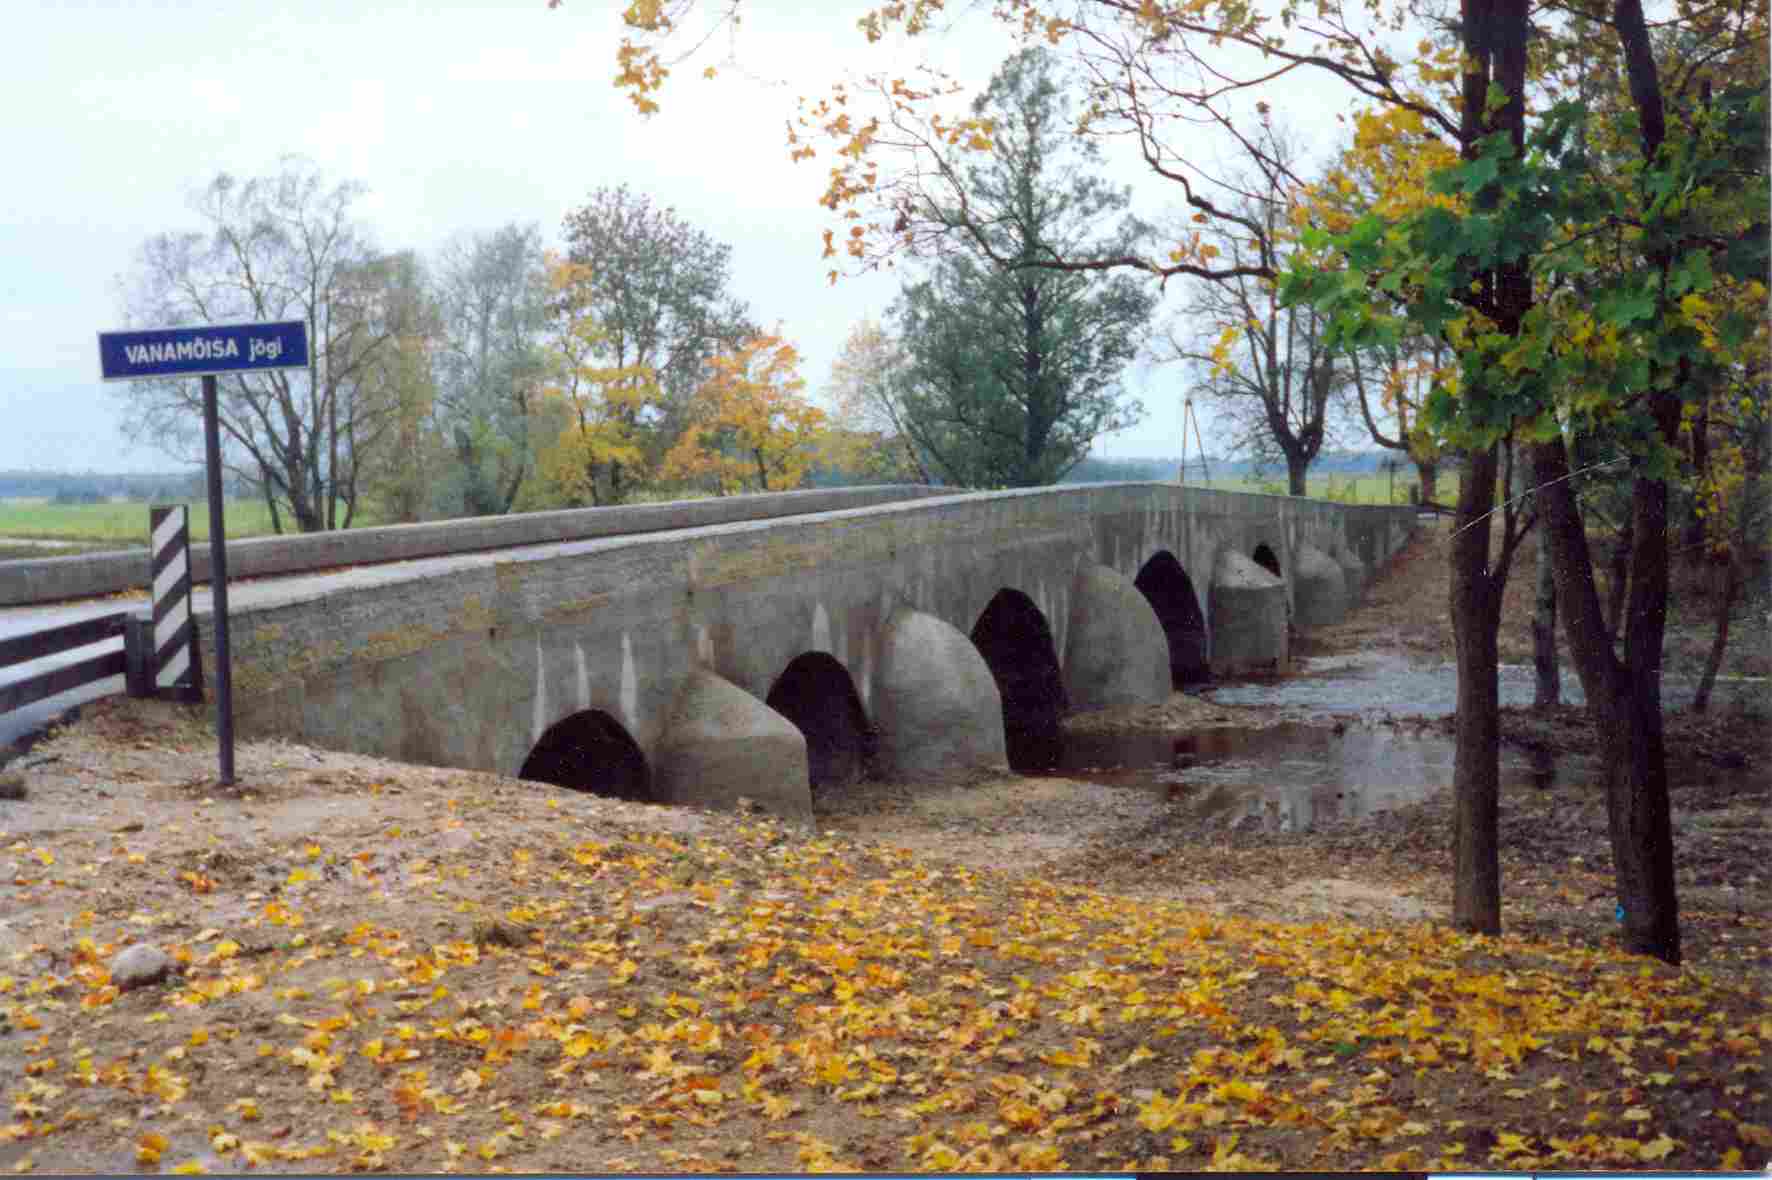 Photo Vanamõisa Bridge